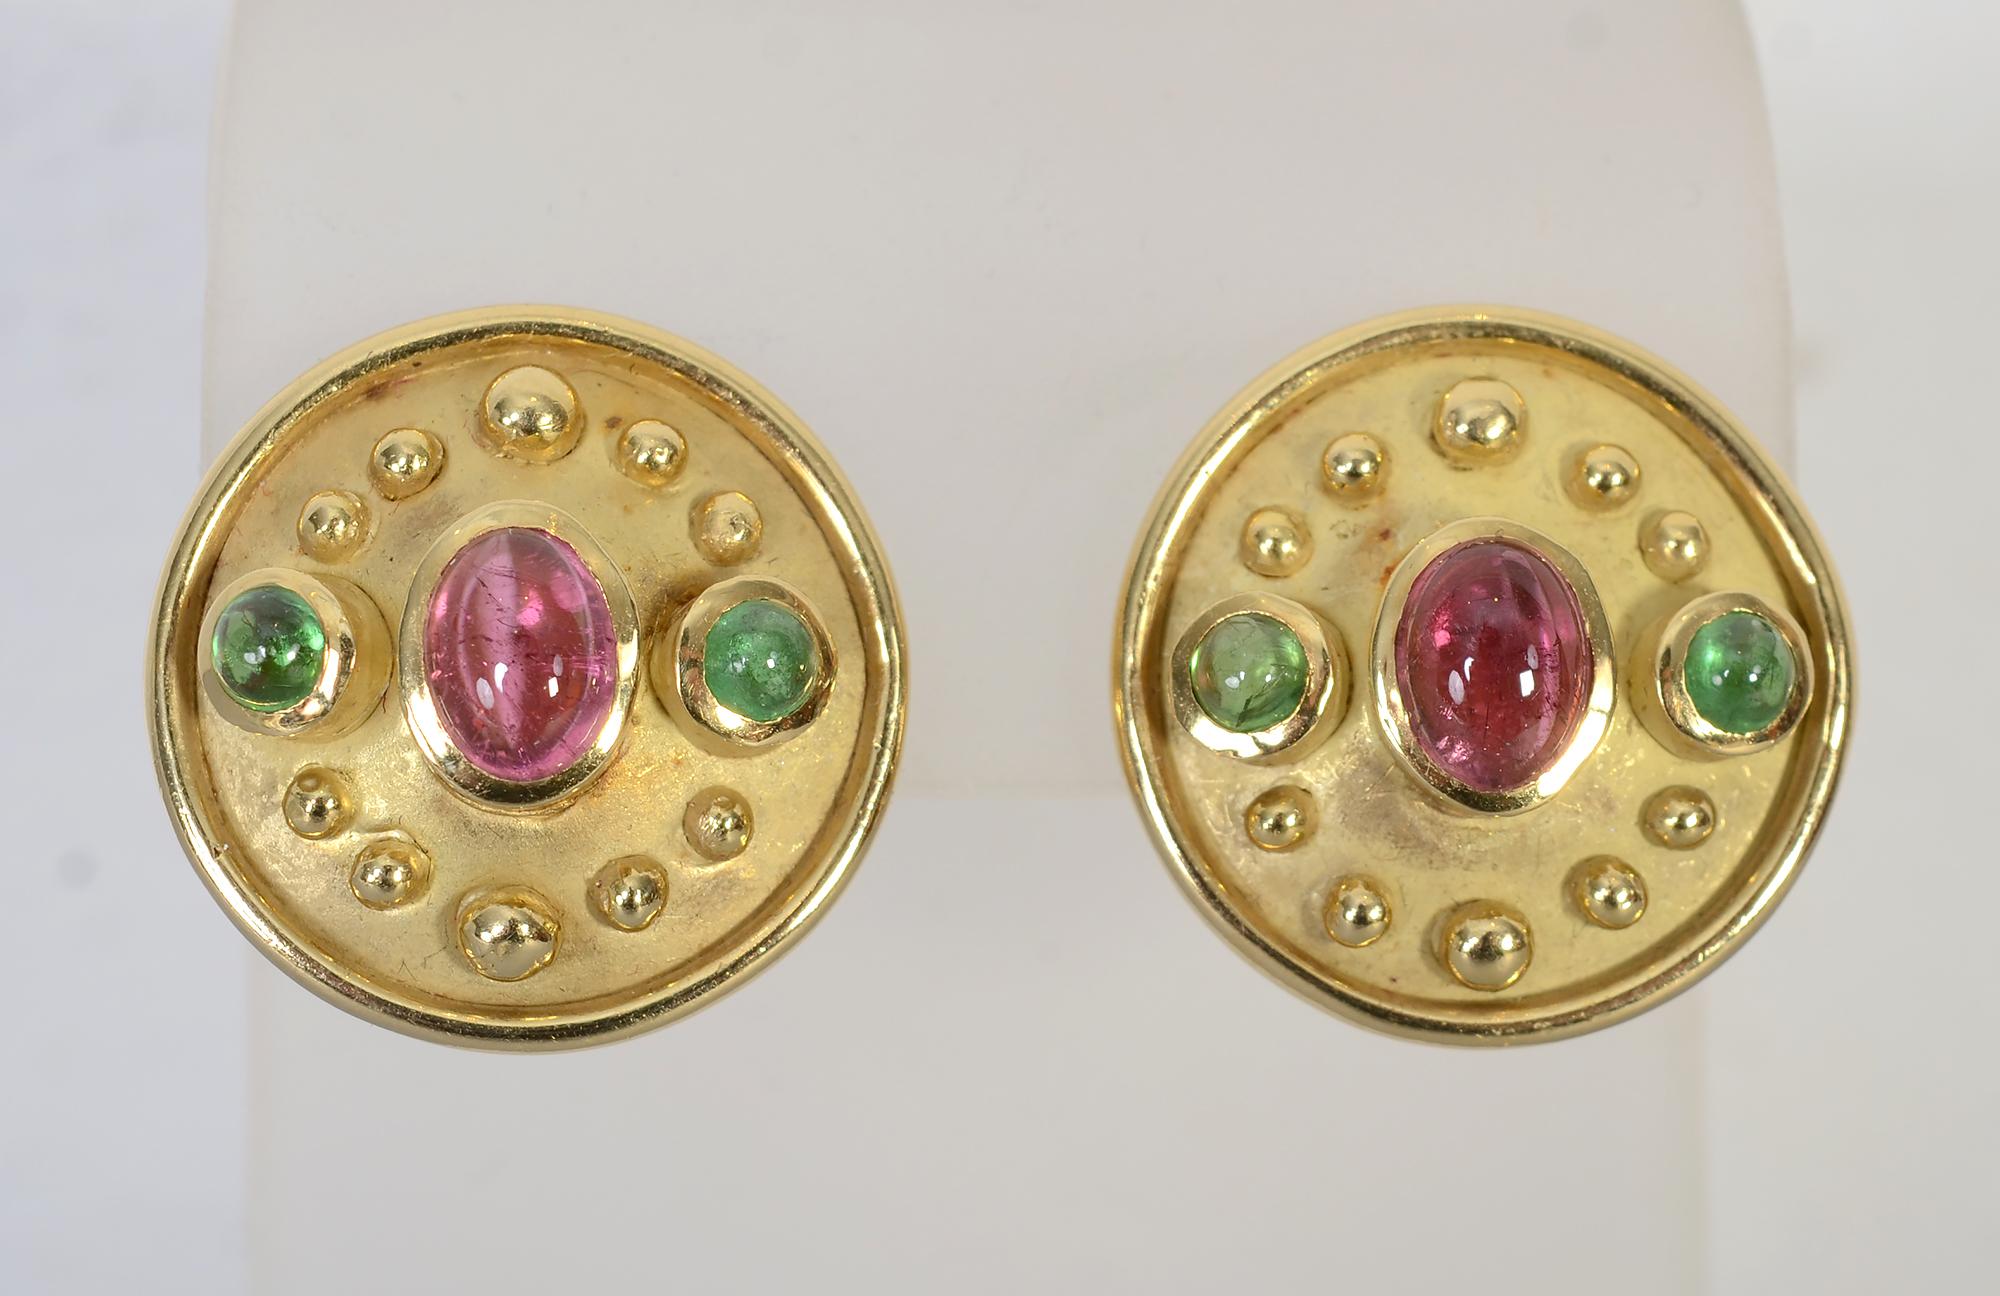 Denise Roberge runde Ohrringe aus 18 Karat Gold mit wunderschön gefärbten rosa und grünen Turmalinen. Der zentrale ovale Stein hat etwa 0,5 Karat und die runden grünen Steine haben jeweils etwa 0,25 Karat. Die goldenen Perlen gehen um den Umfang